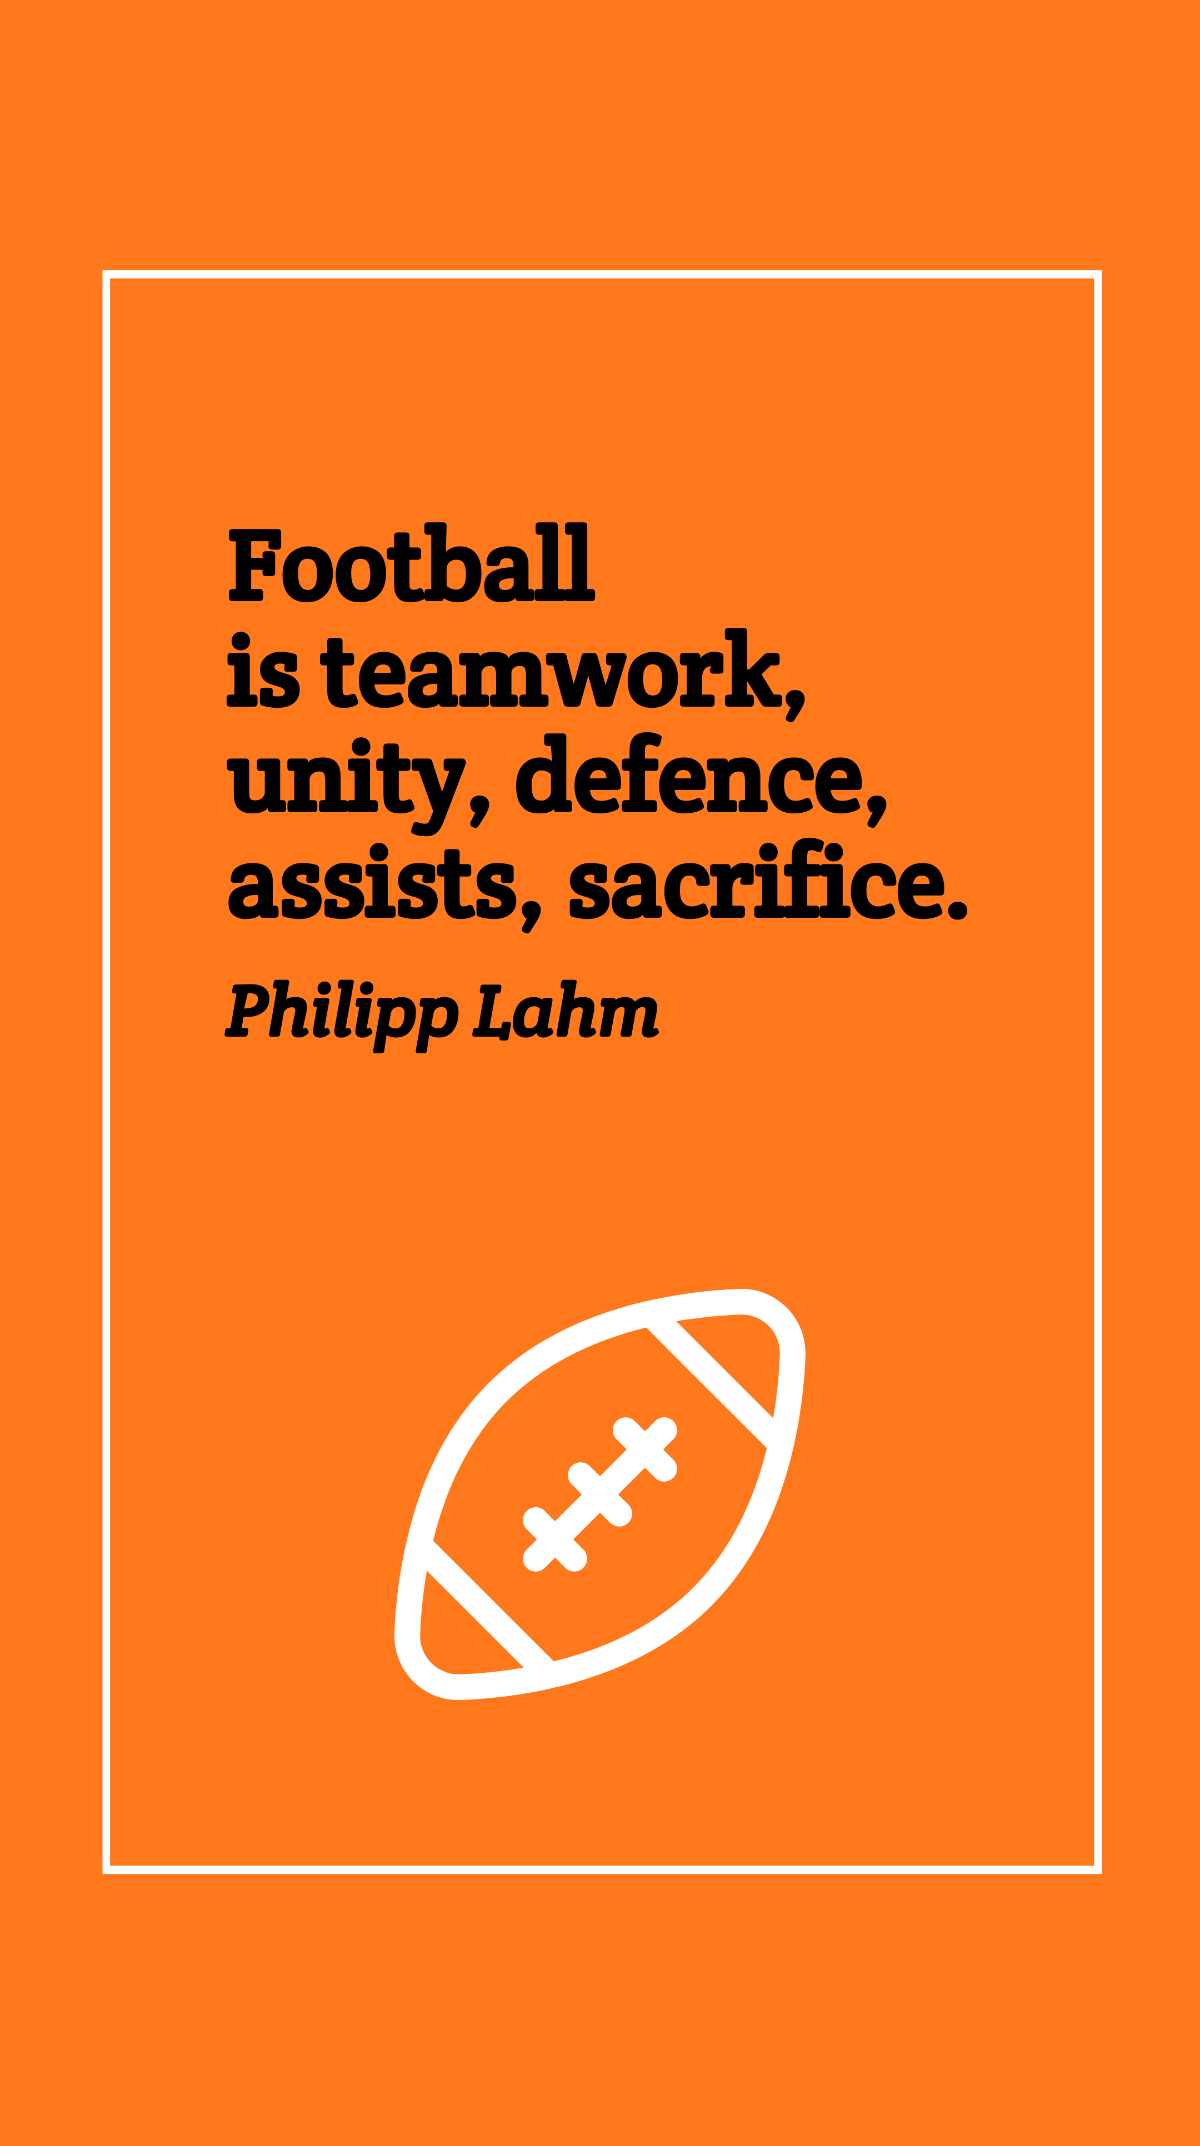 Philipp Lahm - Football is teamwork, unity, defence, assists, sacrifice.